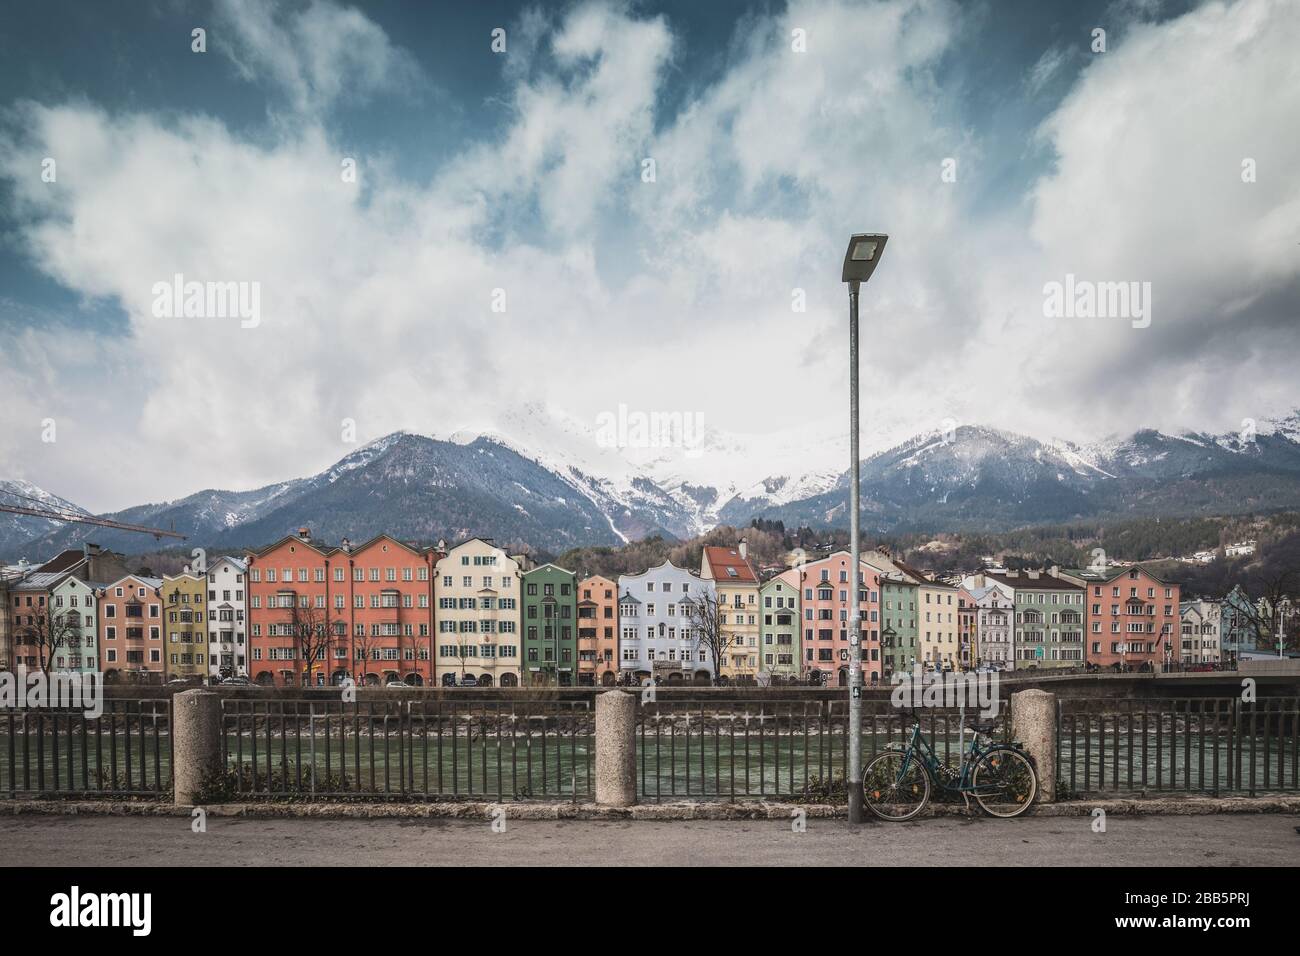 Vista sul centro storico di Innsbruck, con case colorate lungo il fiume Inn e famose vette di montagna austriache sullo sfondo con una bicicletta, Foto Stock